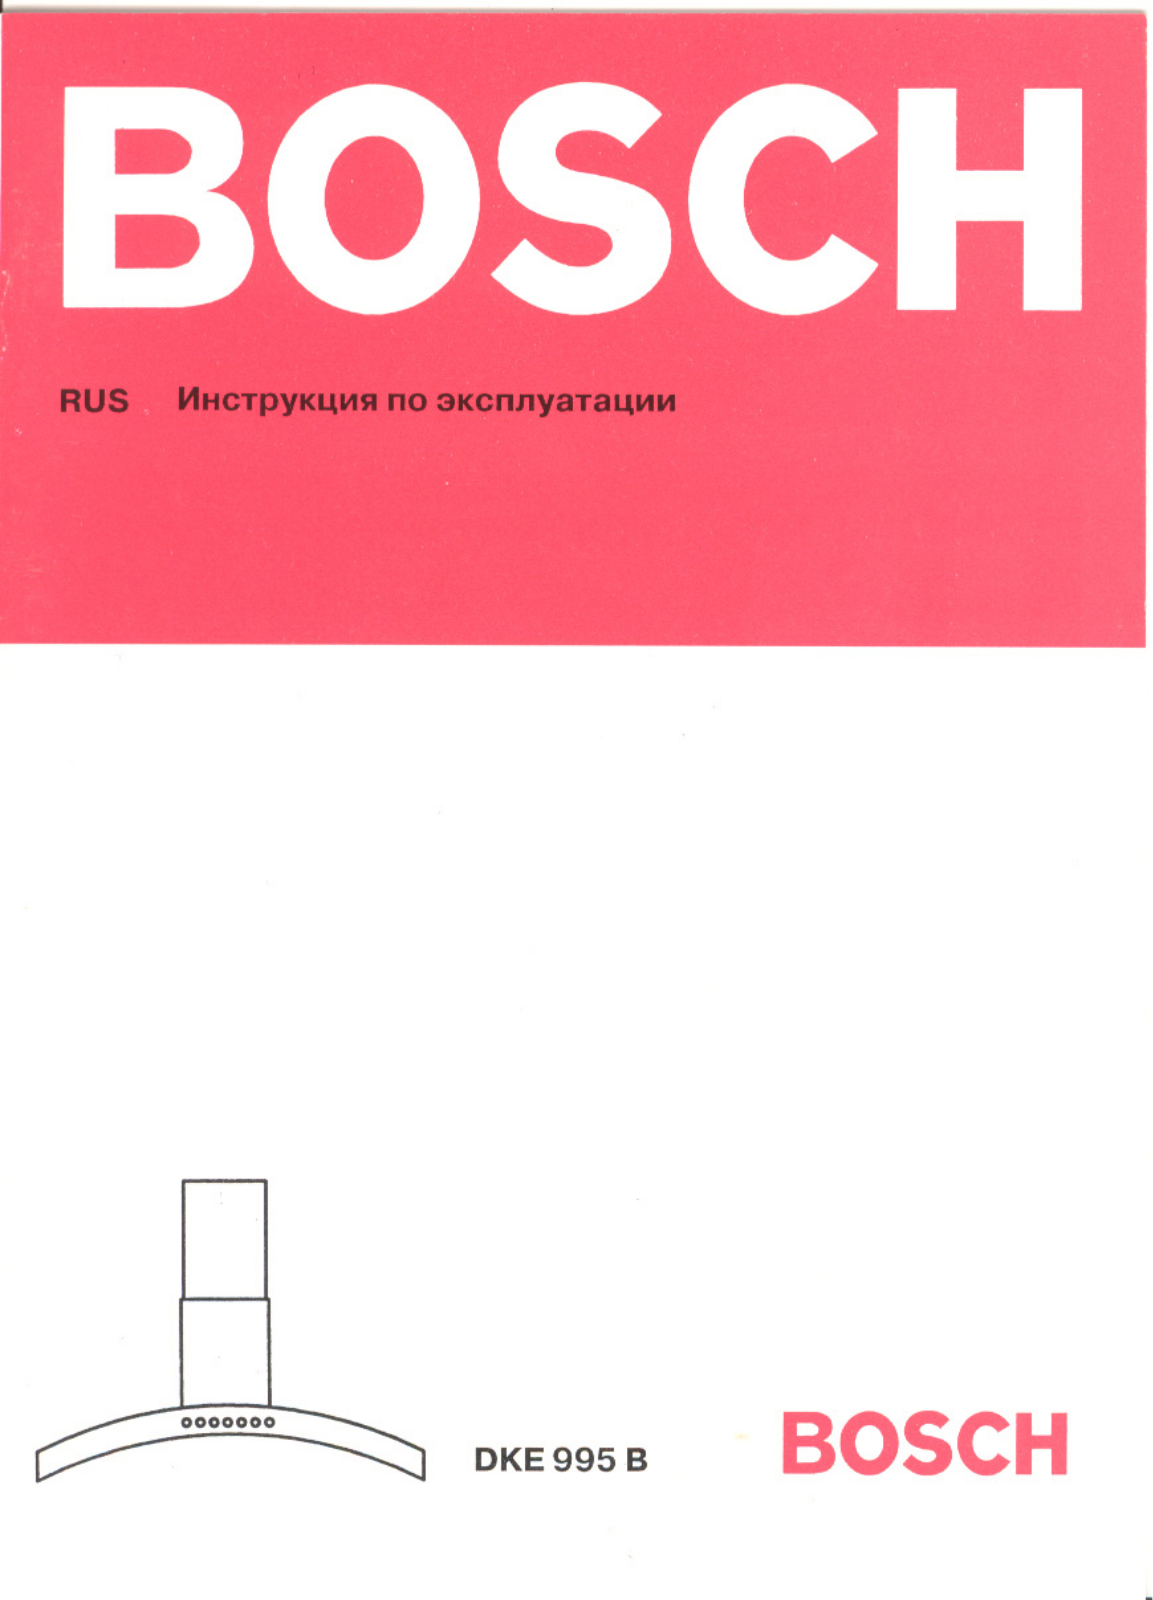 Bosch DKE 995 B User Manual